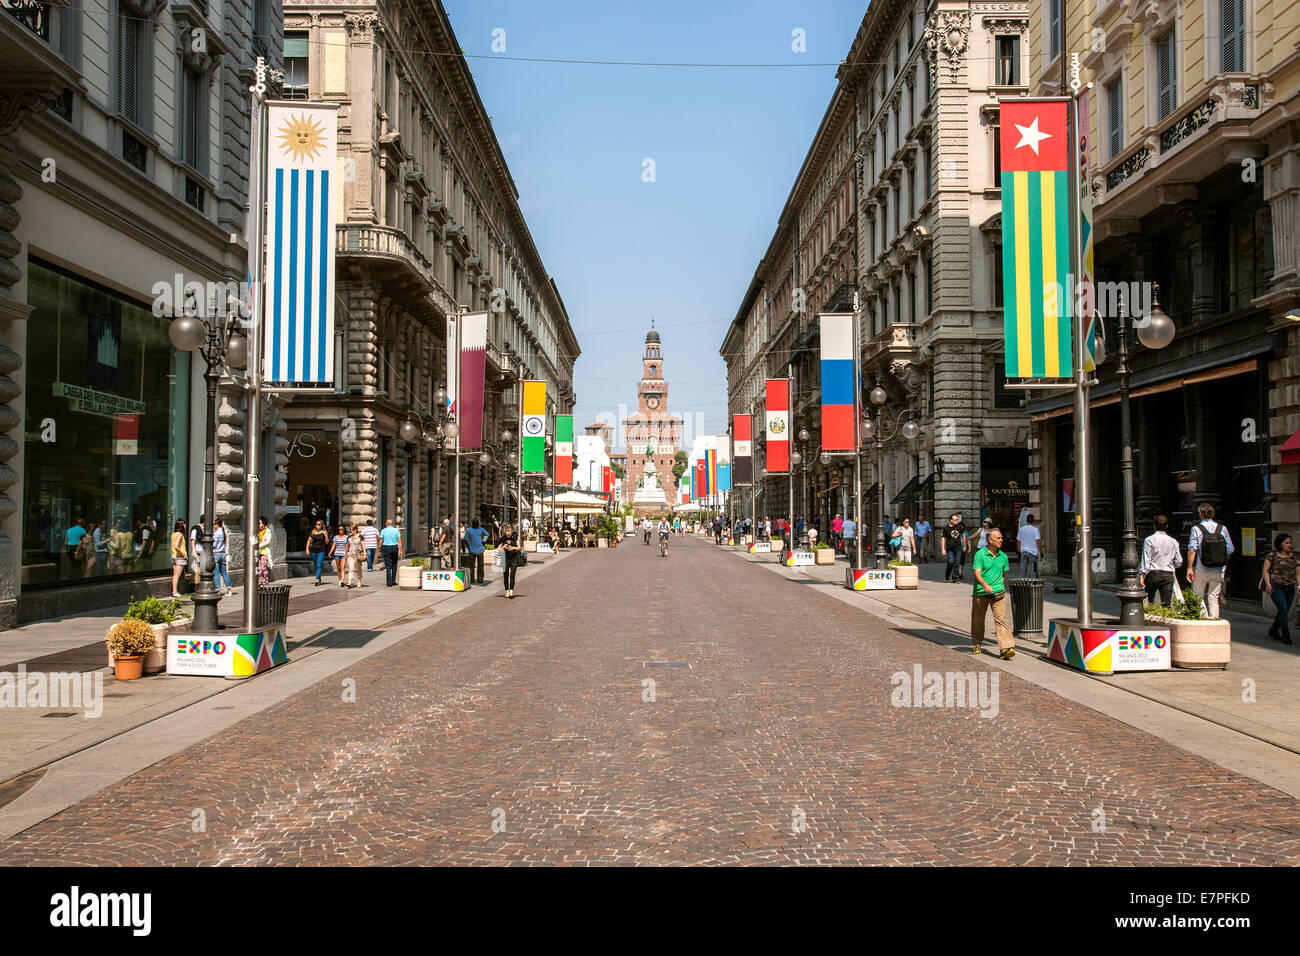 Milano, Milan, Expo 2015, EXPOGATE, travel,  Fair Universal, Exposition, castle Sforzesco,  city, town, infopoint,  via Dante Stock Photo